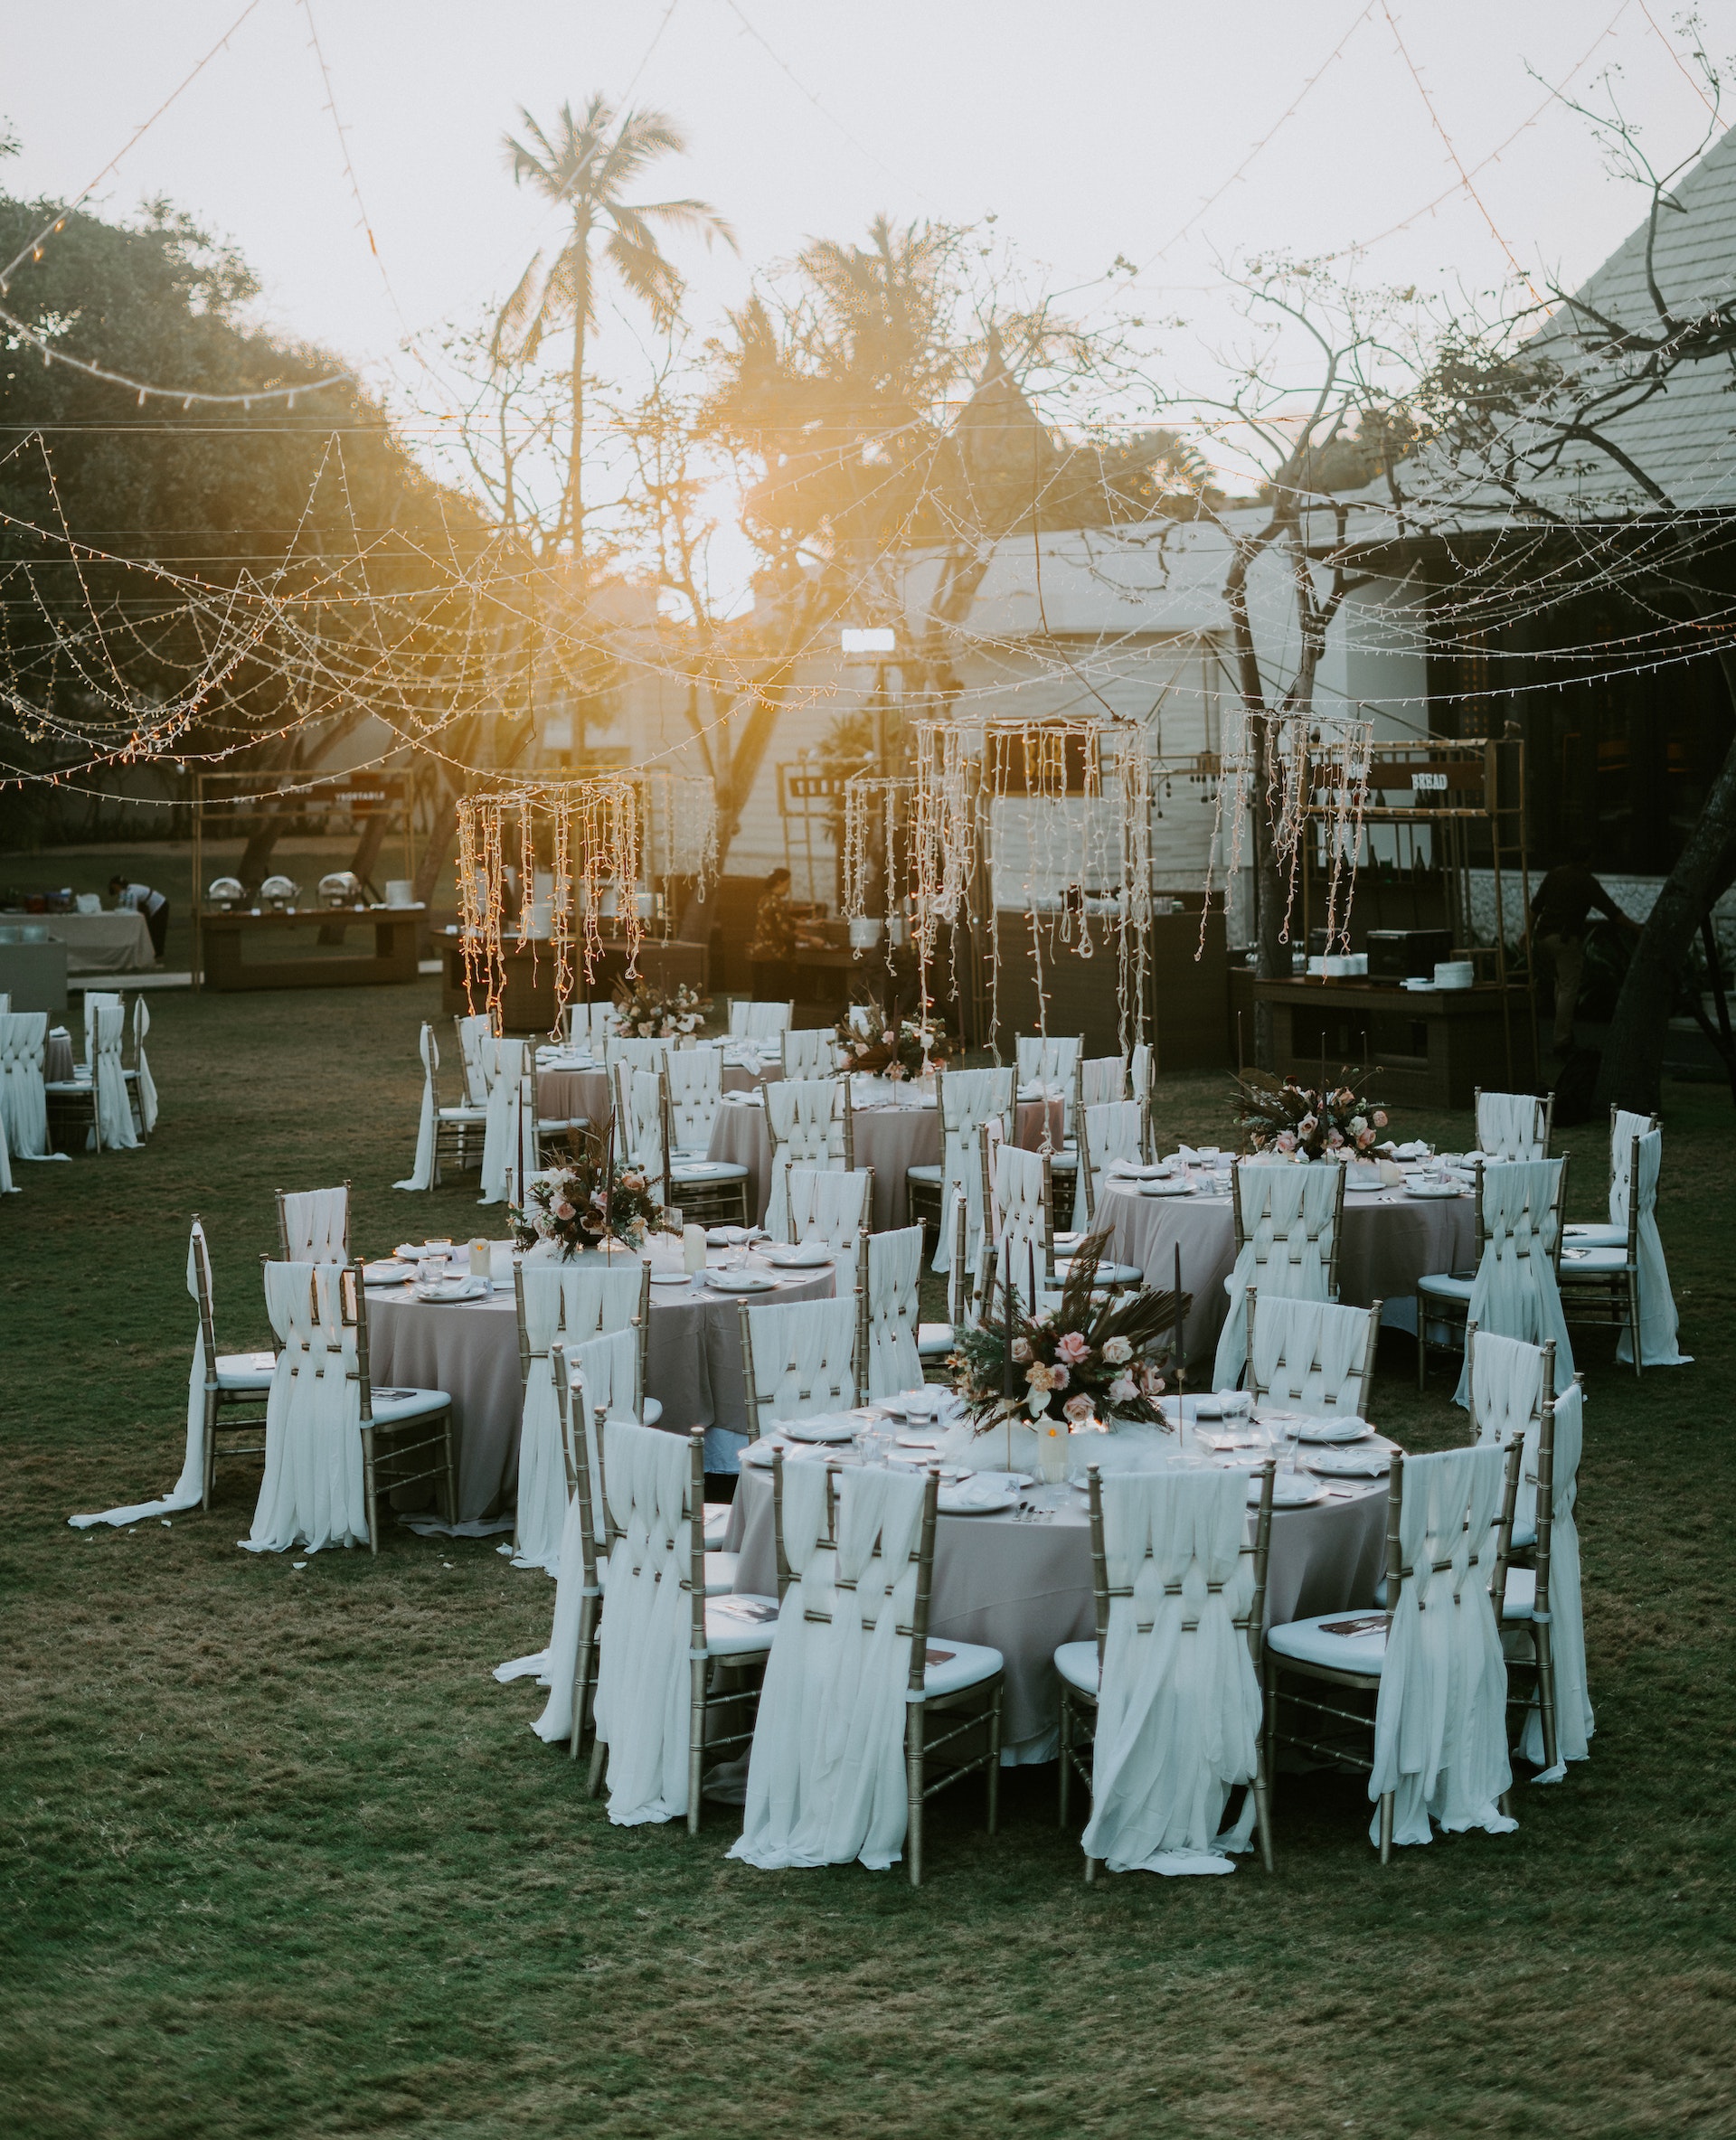 Arrangements for an outdoor wedding | Source: Pexels